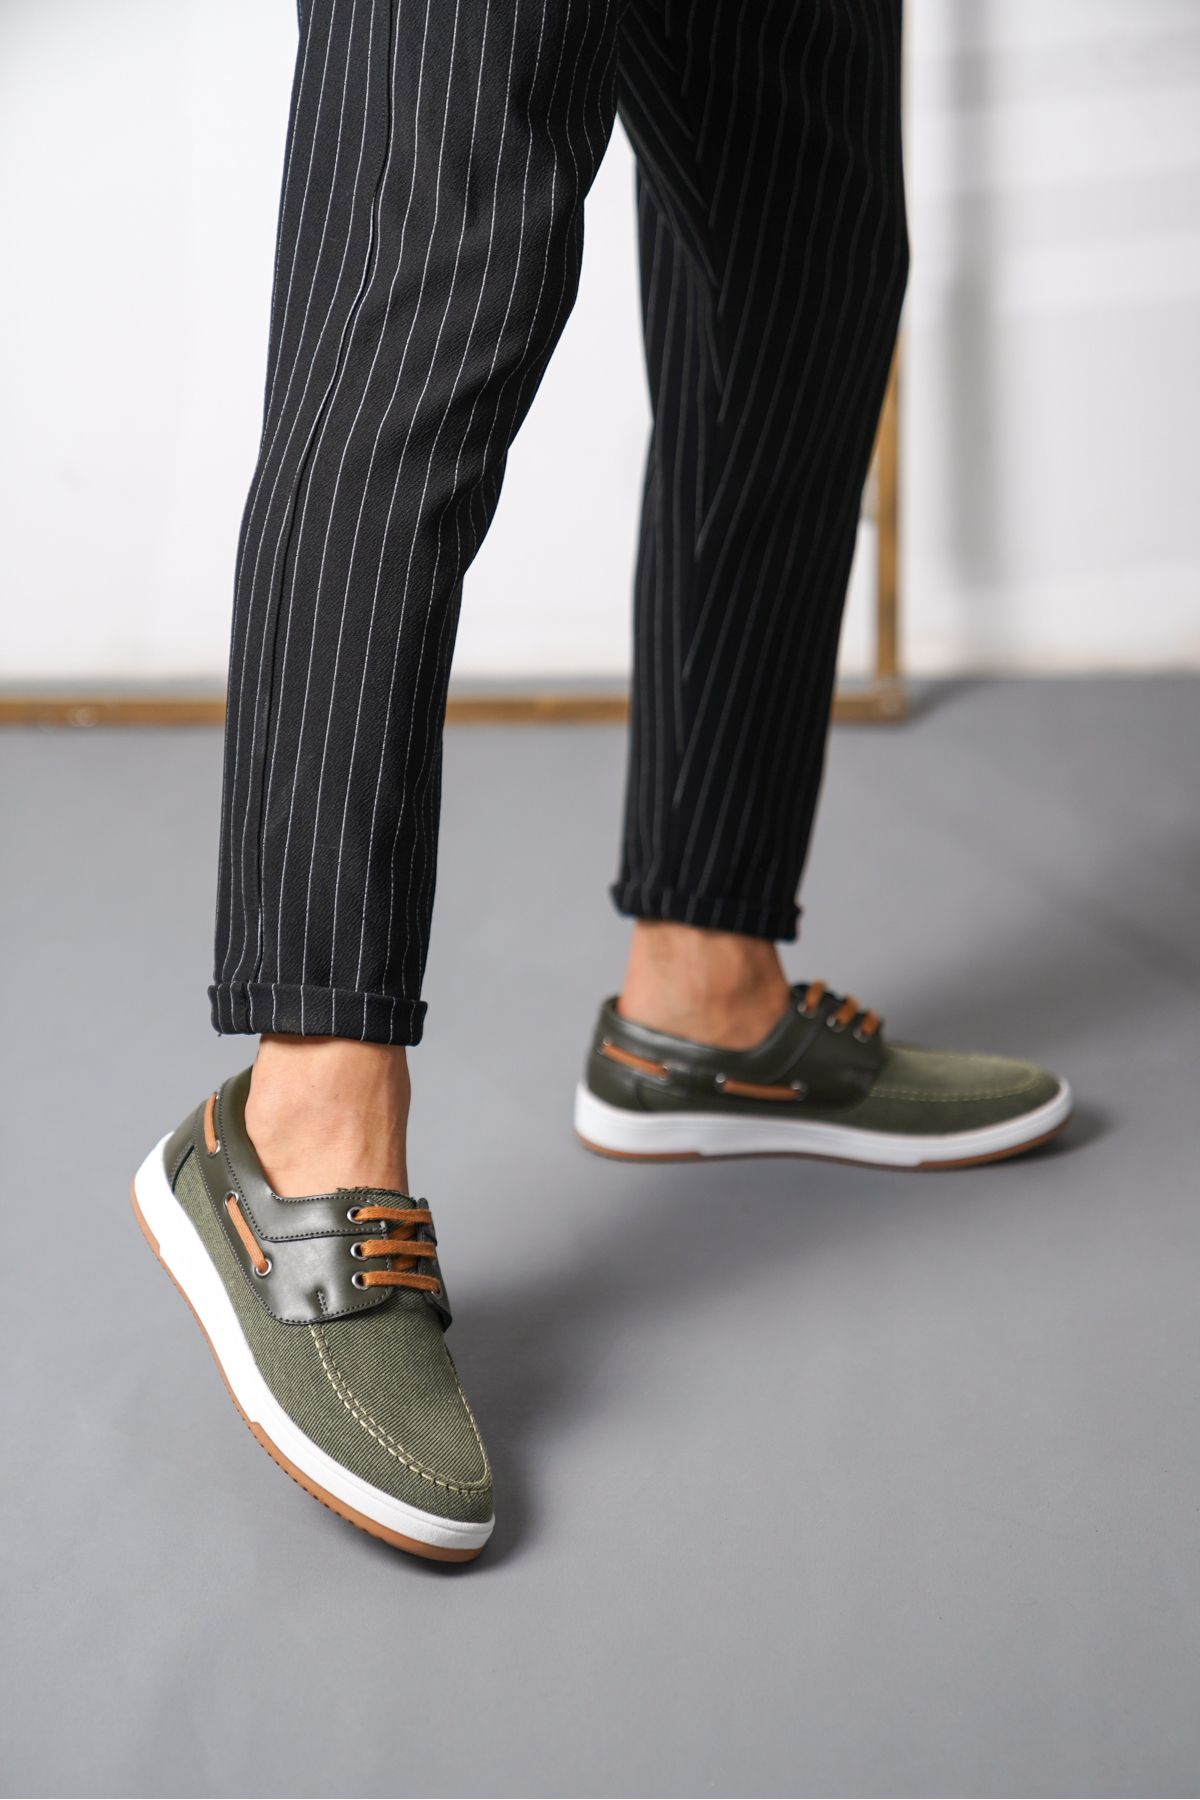 Daxtors Tokyo Günlük Ortopedik Terletmez Keten   Erkek Klasik Ayakkabı